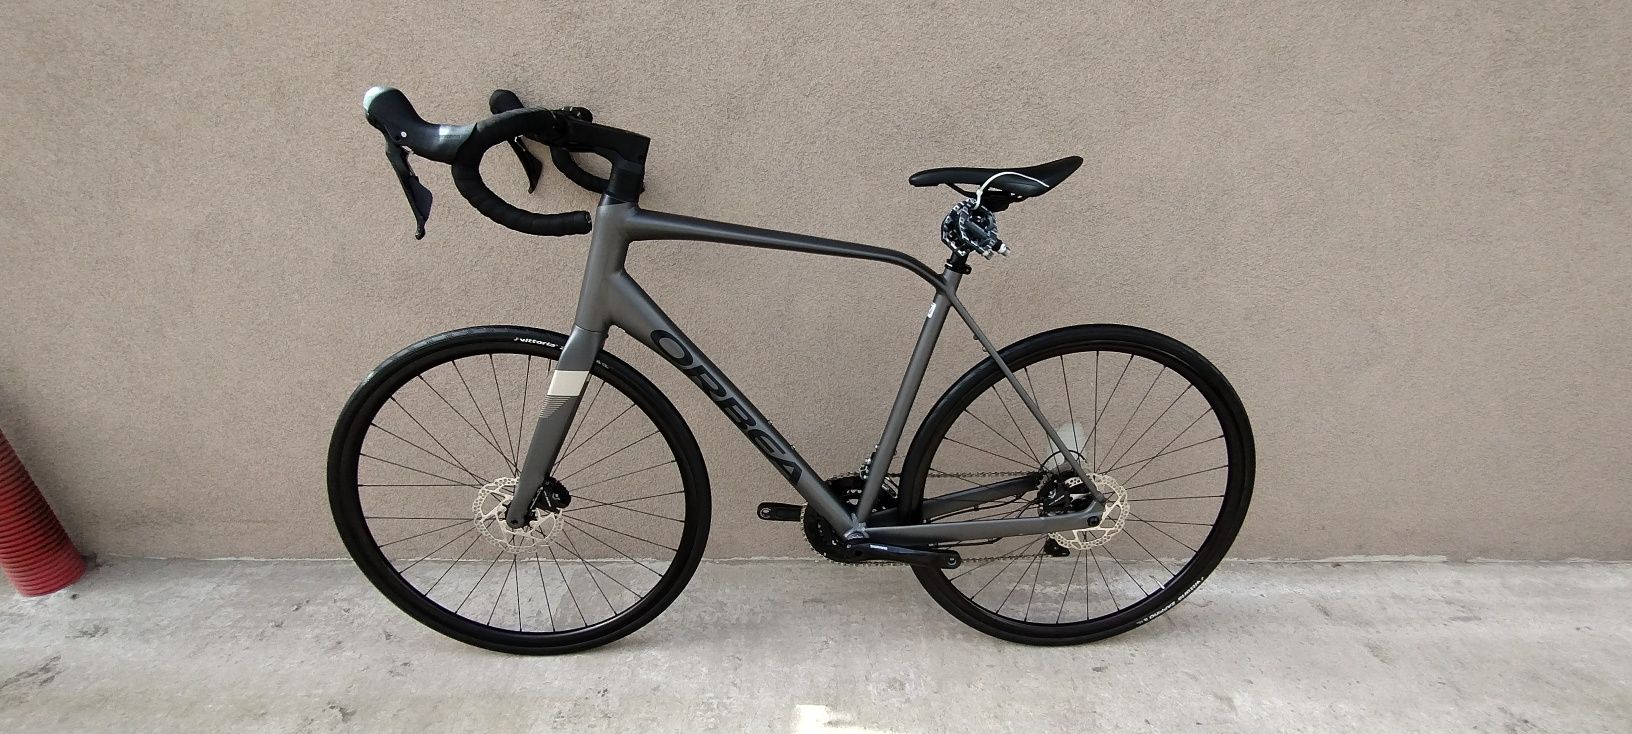 Велосипед orbea (giant scott)  гравел циклокрос гібрид гальма гідравлі